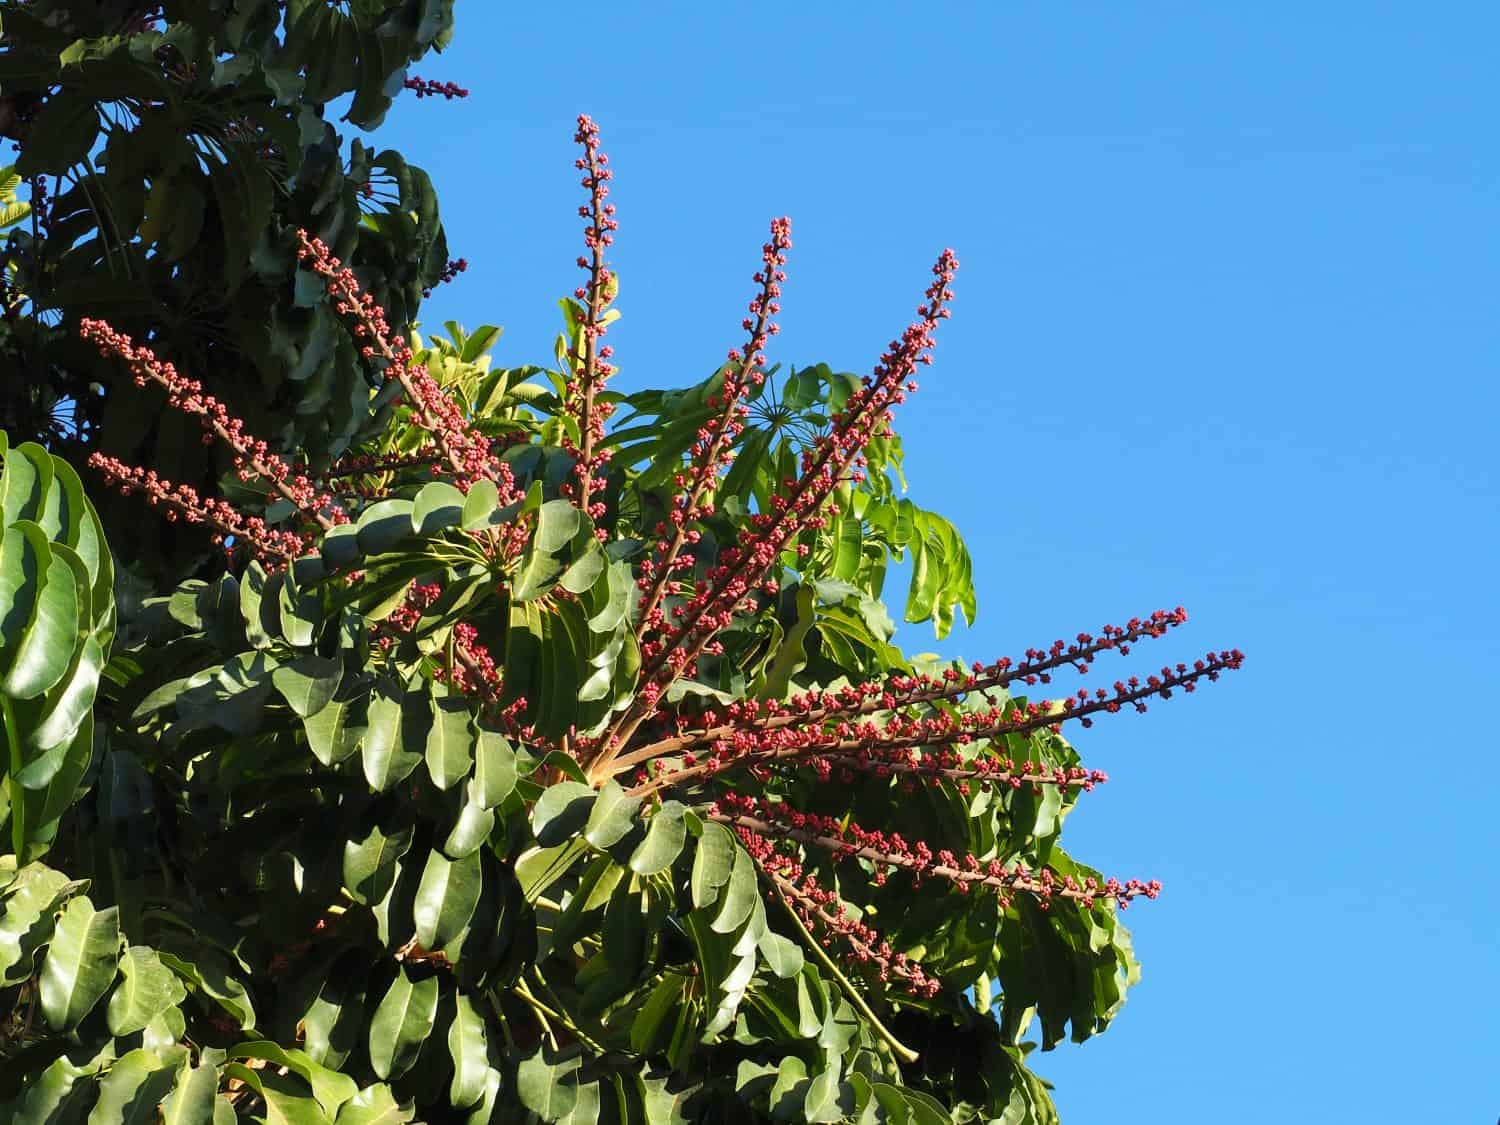 Fiori e foglie dell'albero di polpo (Schefflera actinophylla) sul fondo del cielo blu.